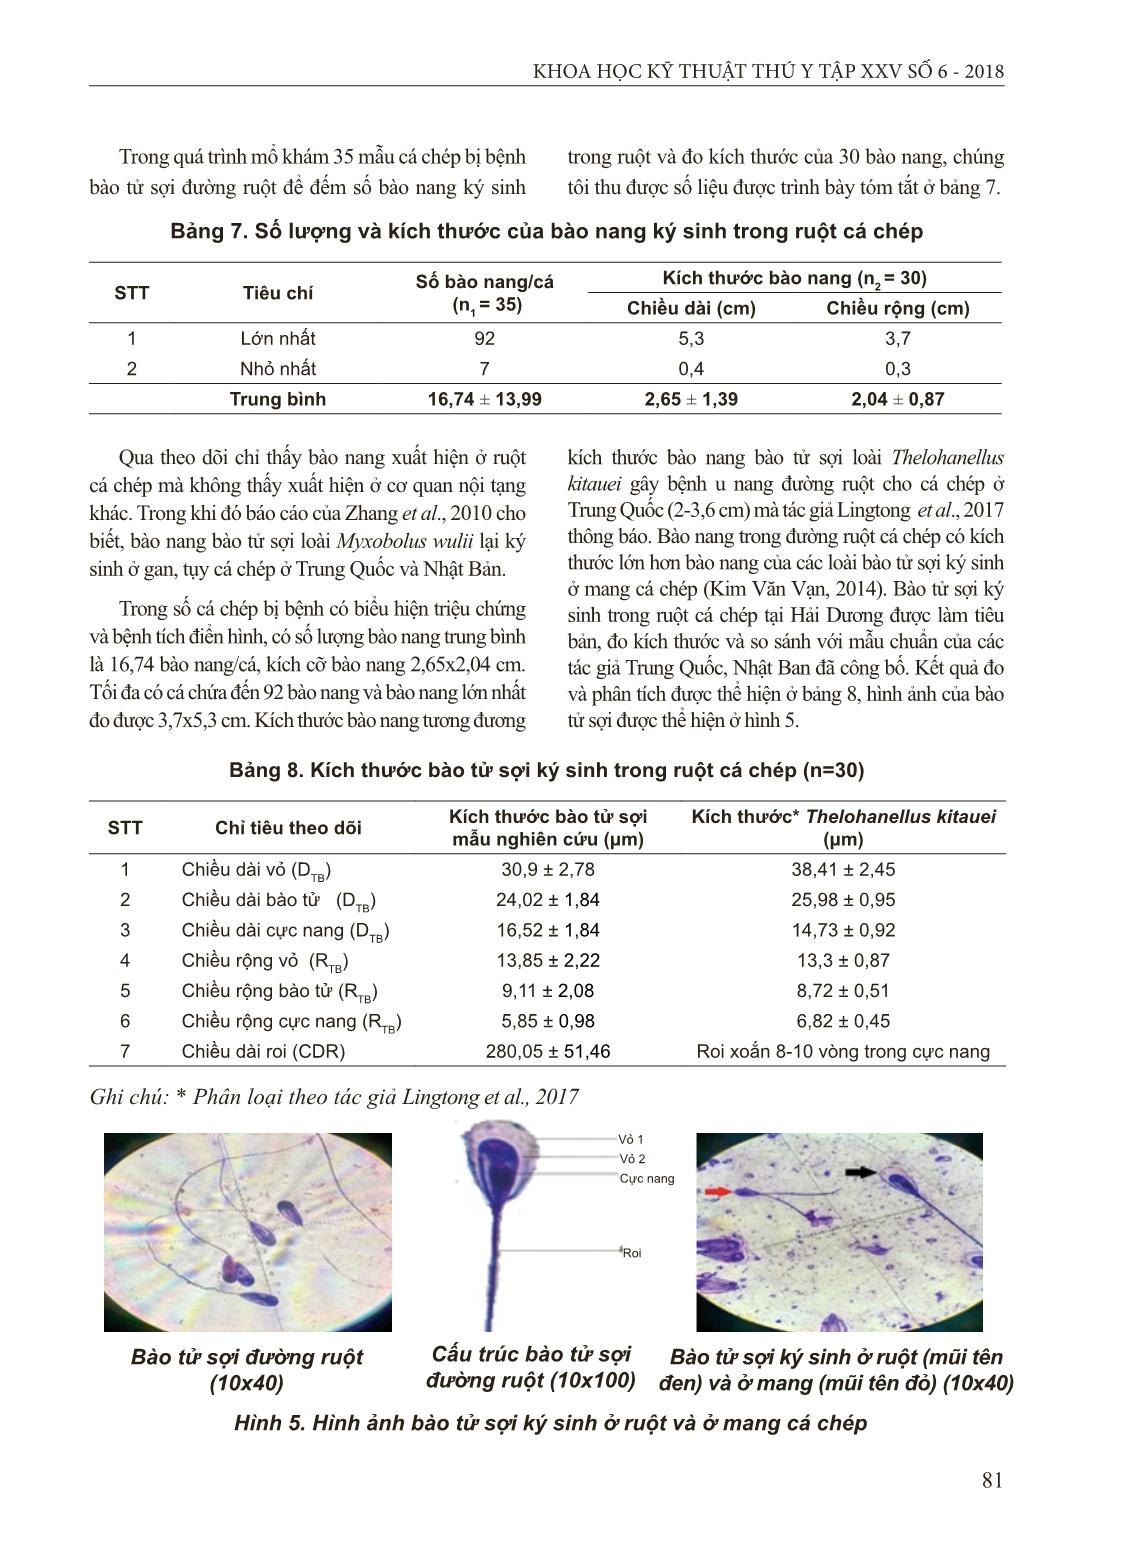 Nghiên cứu một số đặc điểm bệnh u nang bã đậu trong ruột cá chép do bào tử sợi gây ra tại Hải Dương trang 6